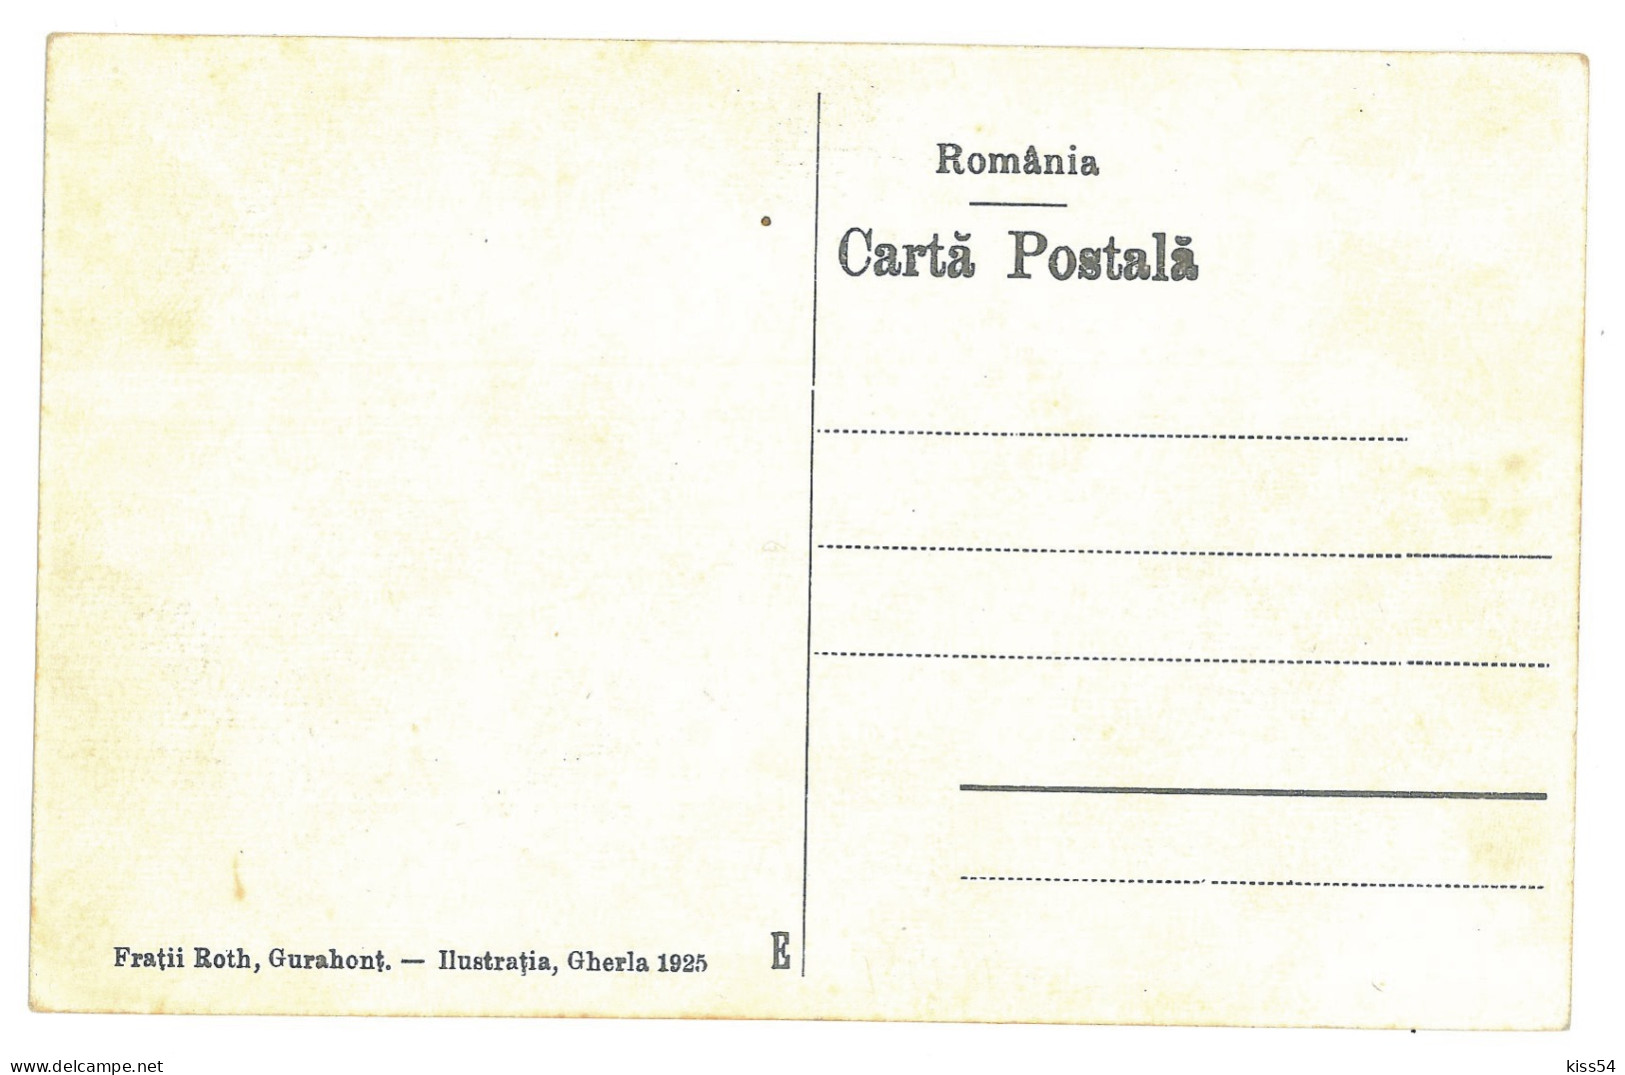 RO 89 - 19250 GURAHONT, Arad, Market, Romania - Old Postcard - Unused - Romania